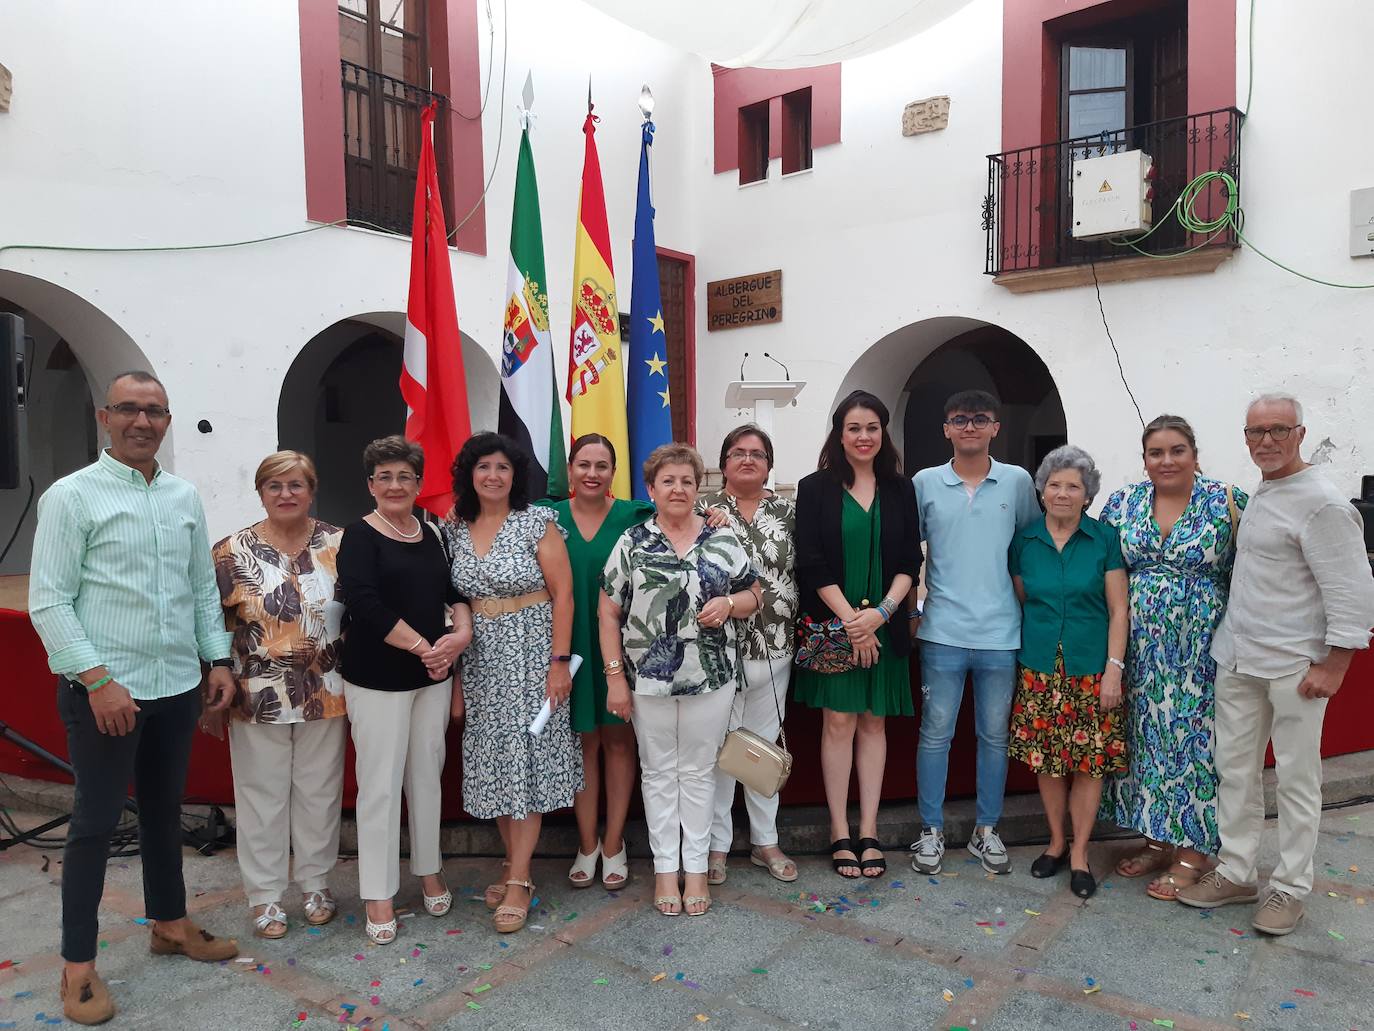 Imagen principal - Primer acto institucional por el Día de Extremadura en Casar de Cáceres